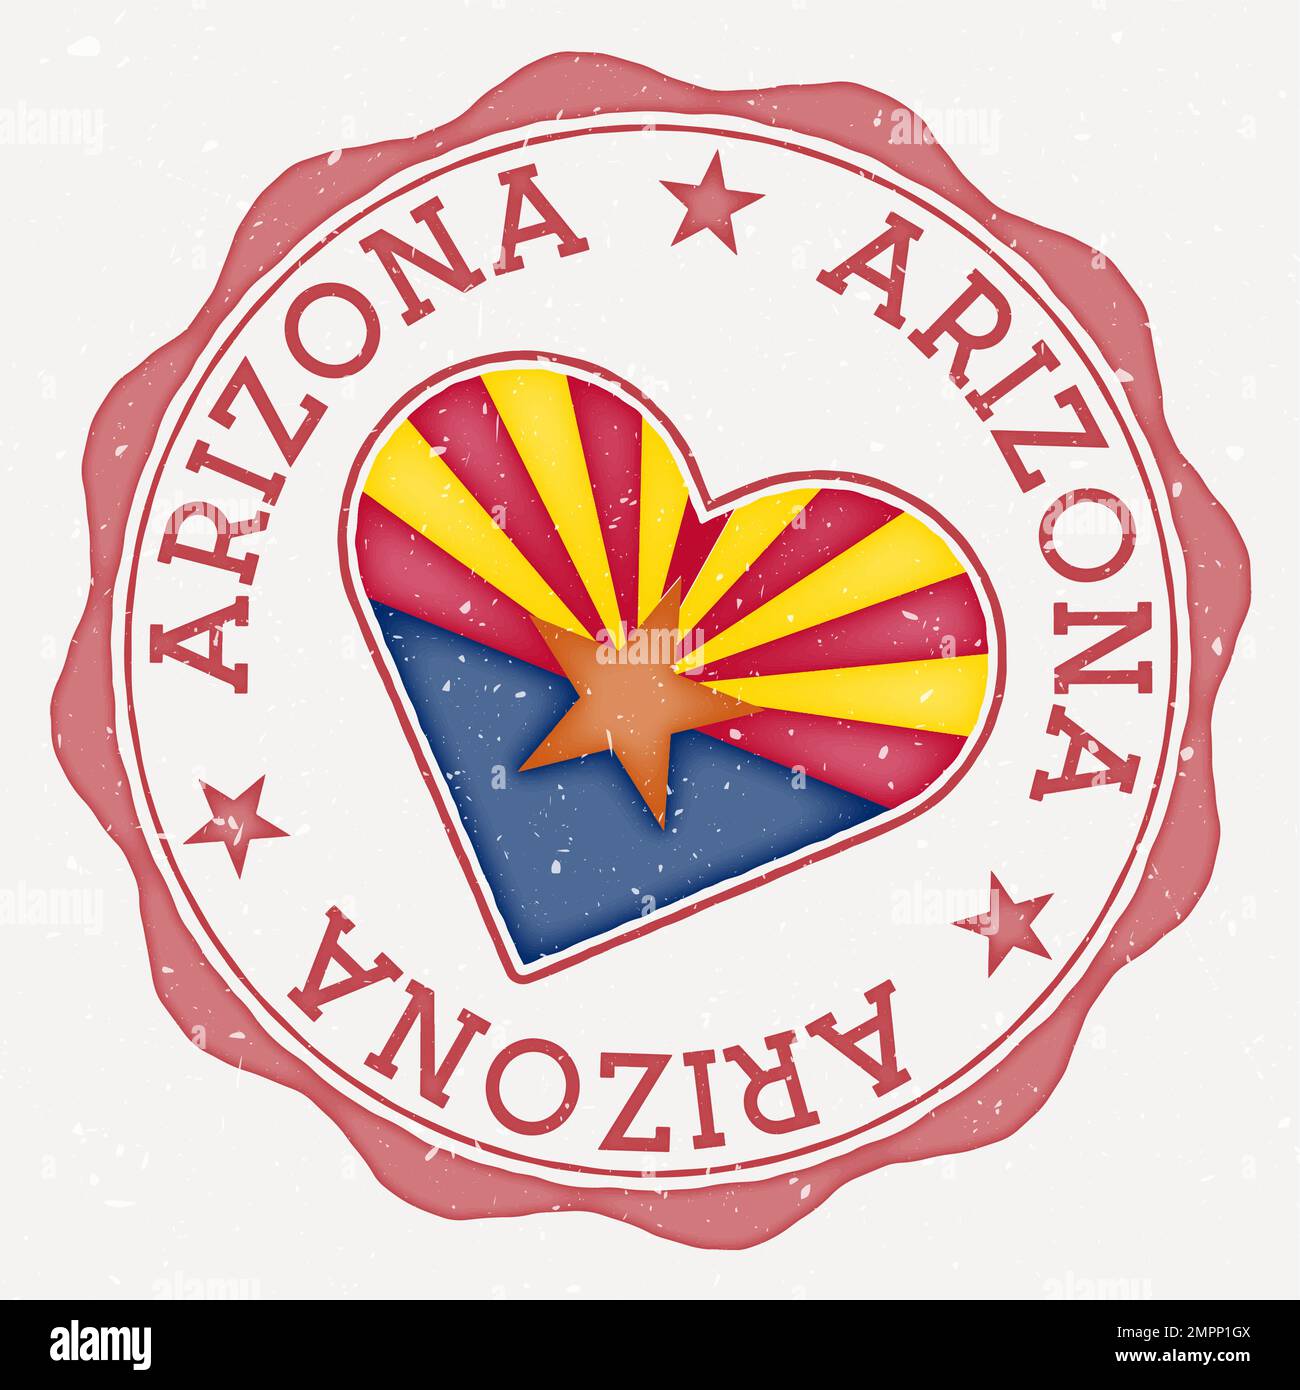 Arizona heart flag logo. Us state name text around Arizona flag in a ...